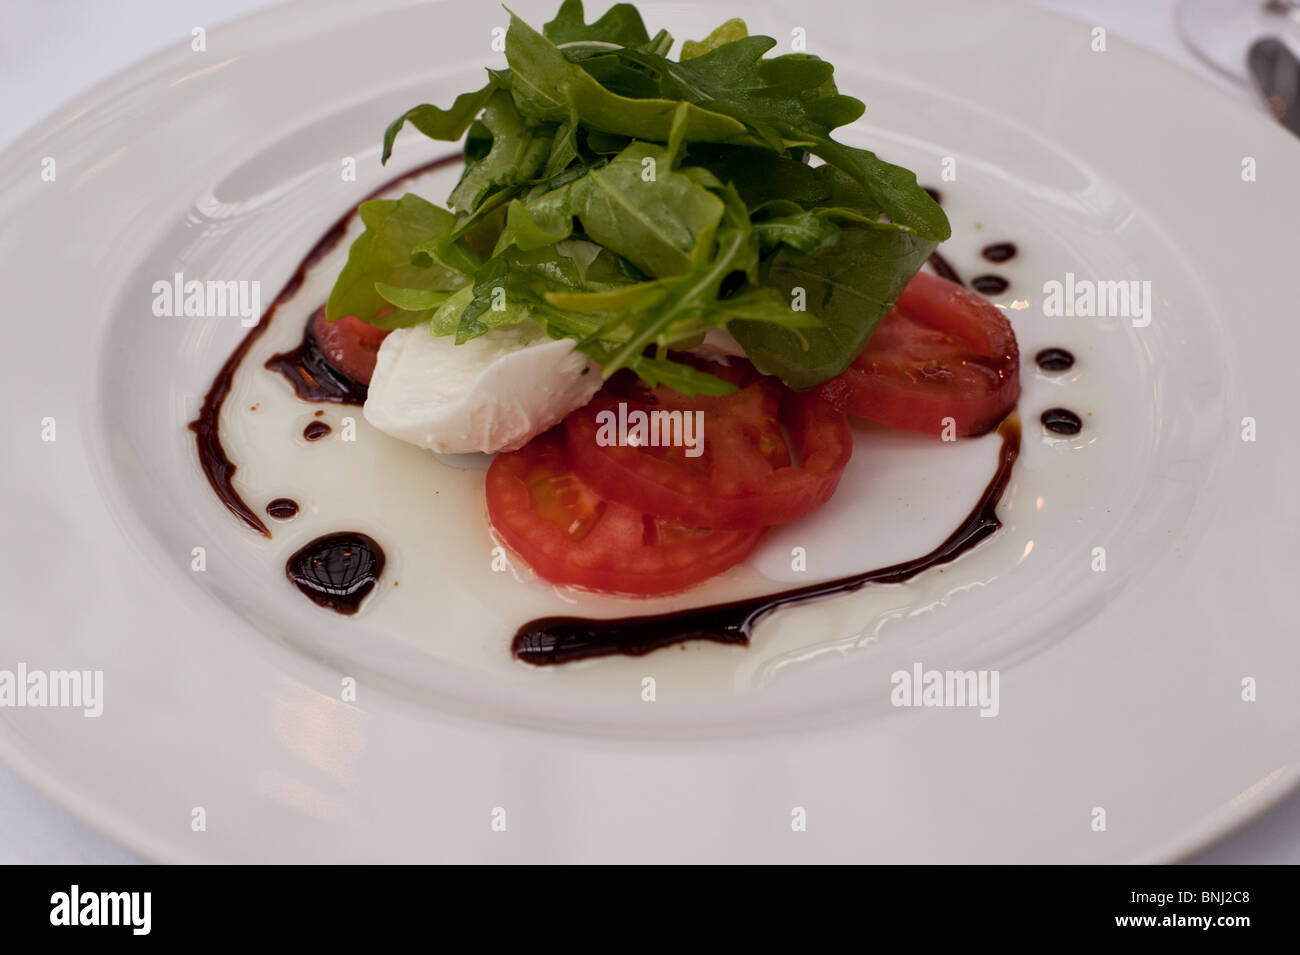 Tomates mûres fraîches servi avec mozzarella di buffala, roquette, sont habillés avec une réduction de balsamique et d'huile d'olive. Banque D'Images